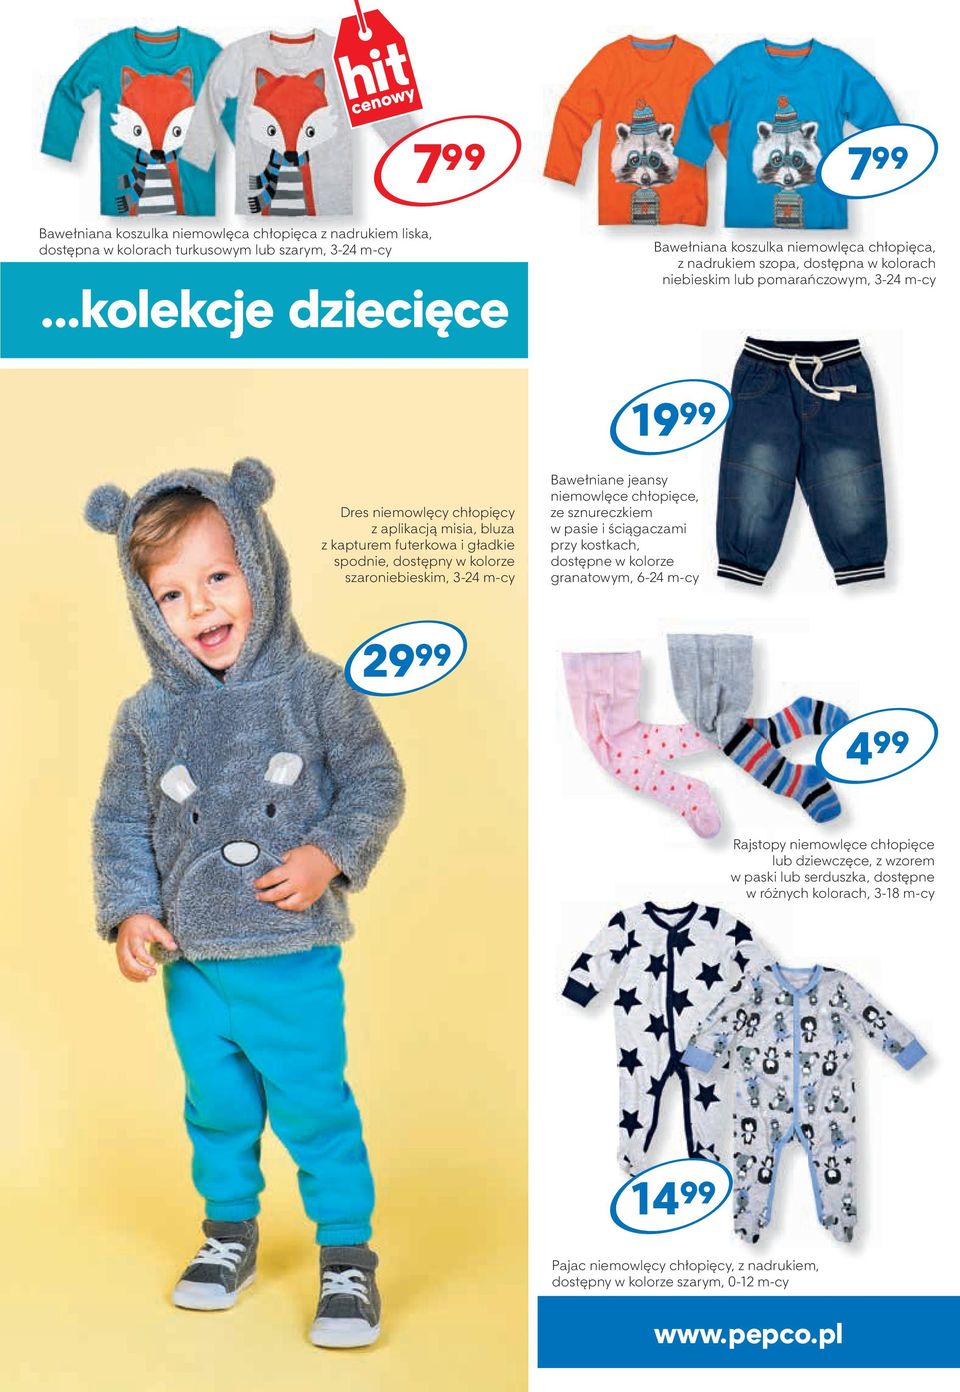 misia, bluza z kapturem futerkowa i gładkie spodnie, dostępny w kolorze szaroniebieskim, 3-24 m-cy Bawełniane jeansy niemowlęce chłopięce, ze sznureczkiem w pasie i ściągaczami przy